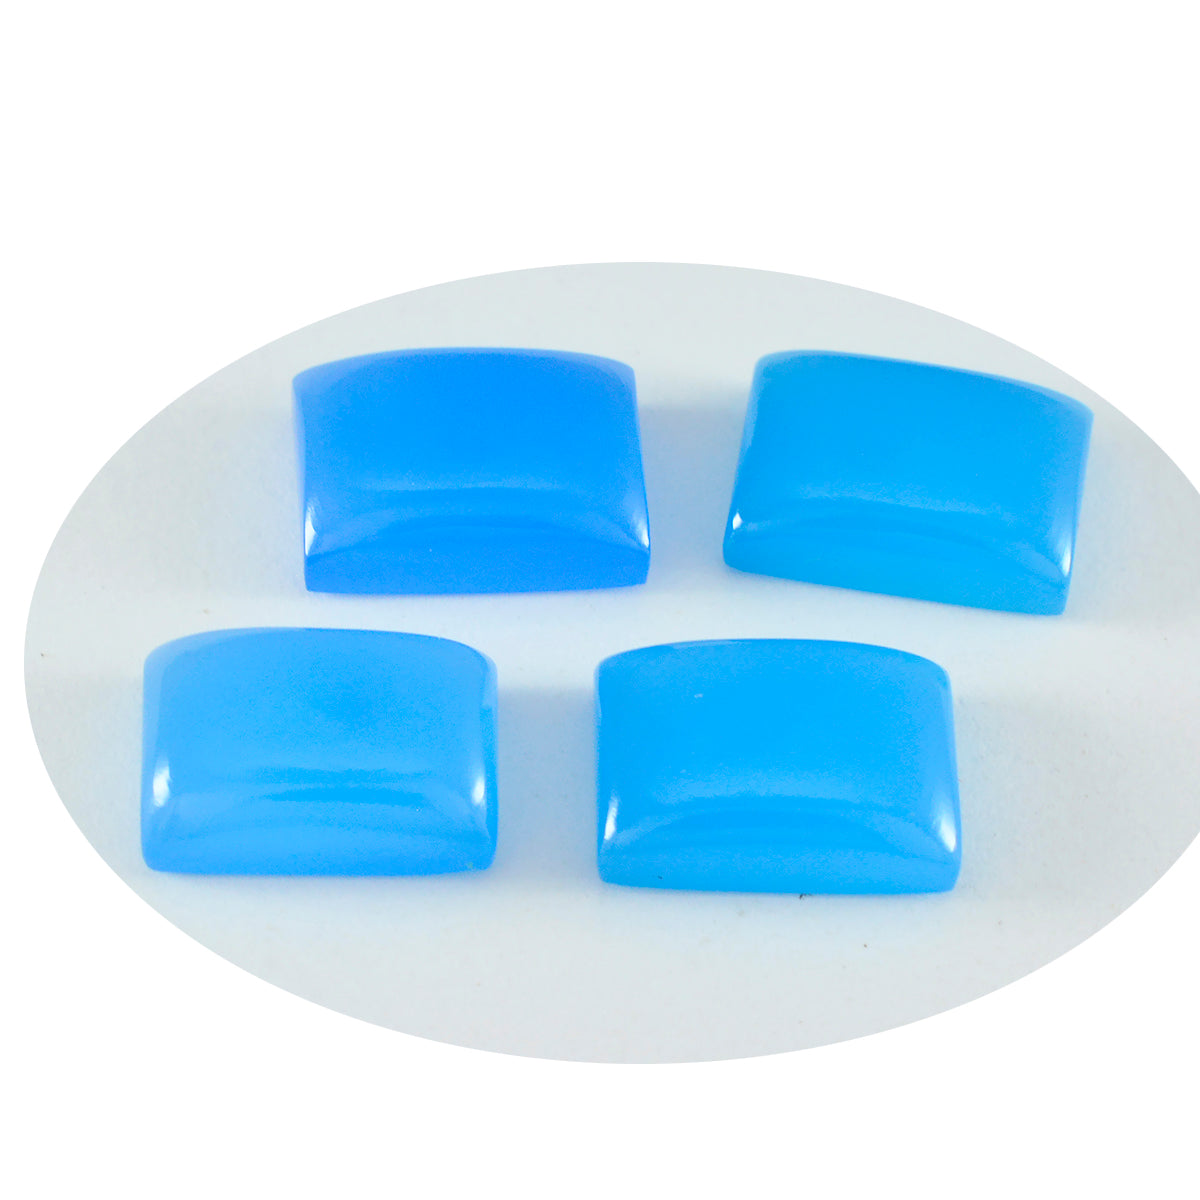 Riyogems 1 Stück blauer Chalcedon-Cabochon, 10 x 12 mm, Achteckform, hübsche Qualitätsedelsteine